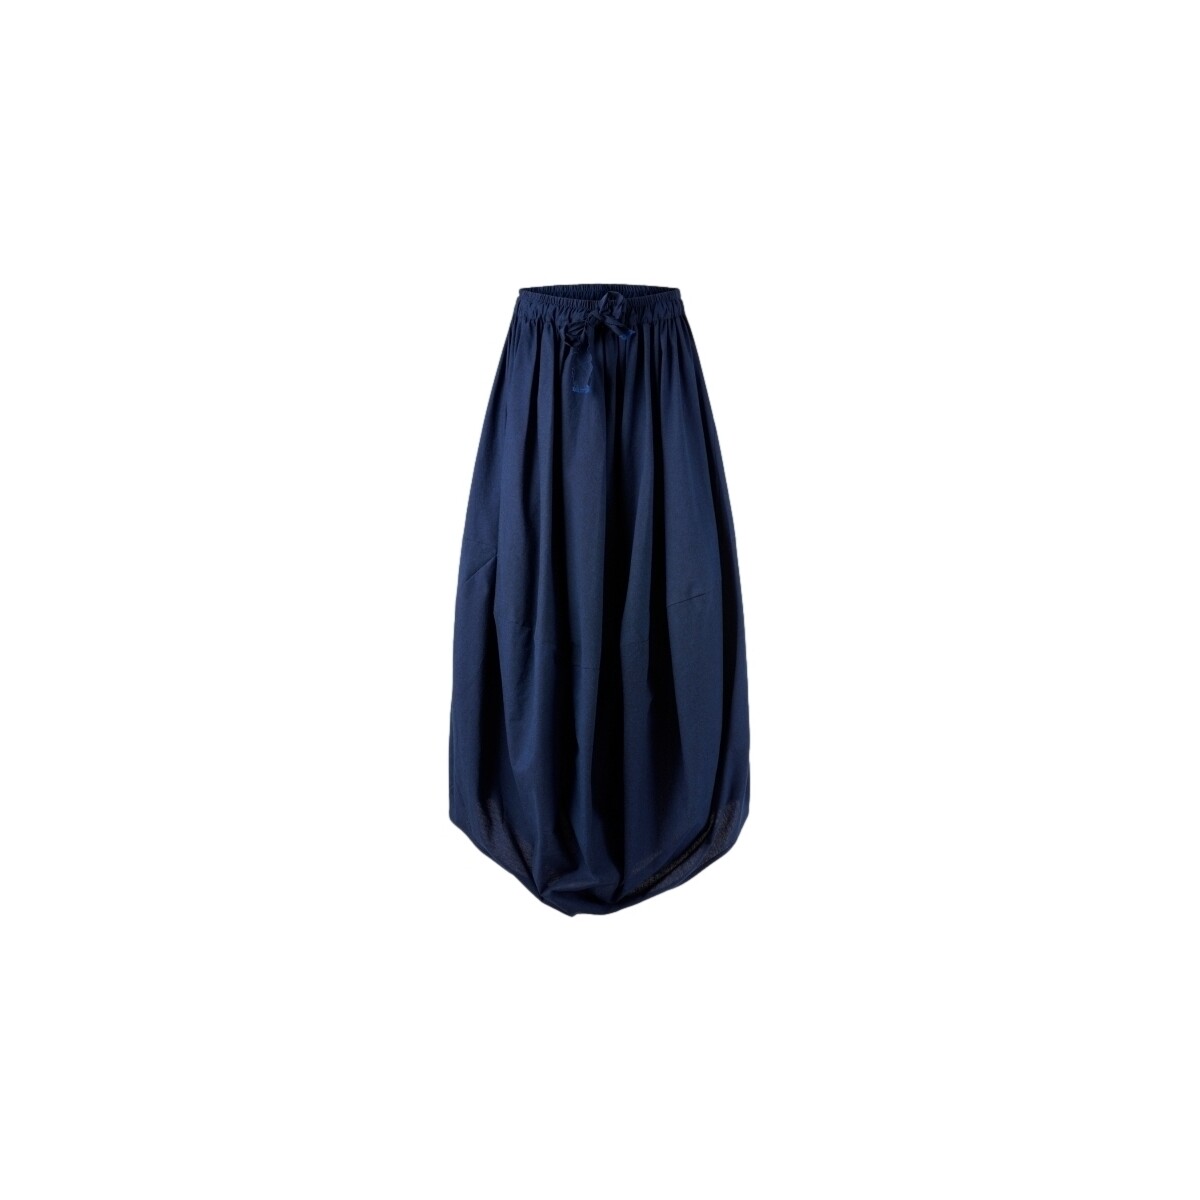 tekstylia Damskie Spódnice Wendy Trendy Skirt 791355 - Blue Niebieski